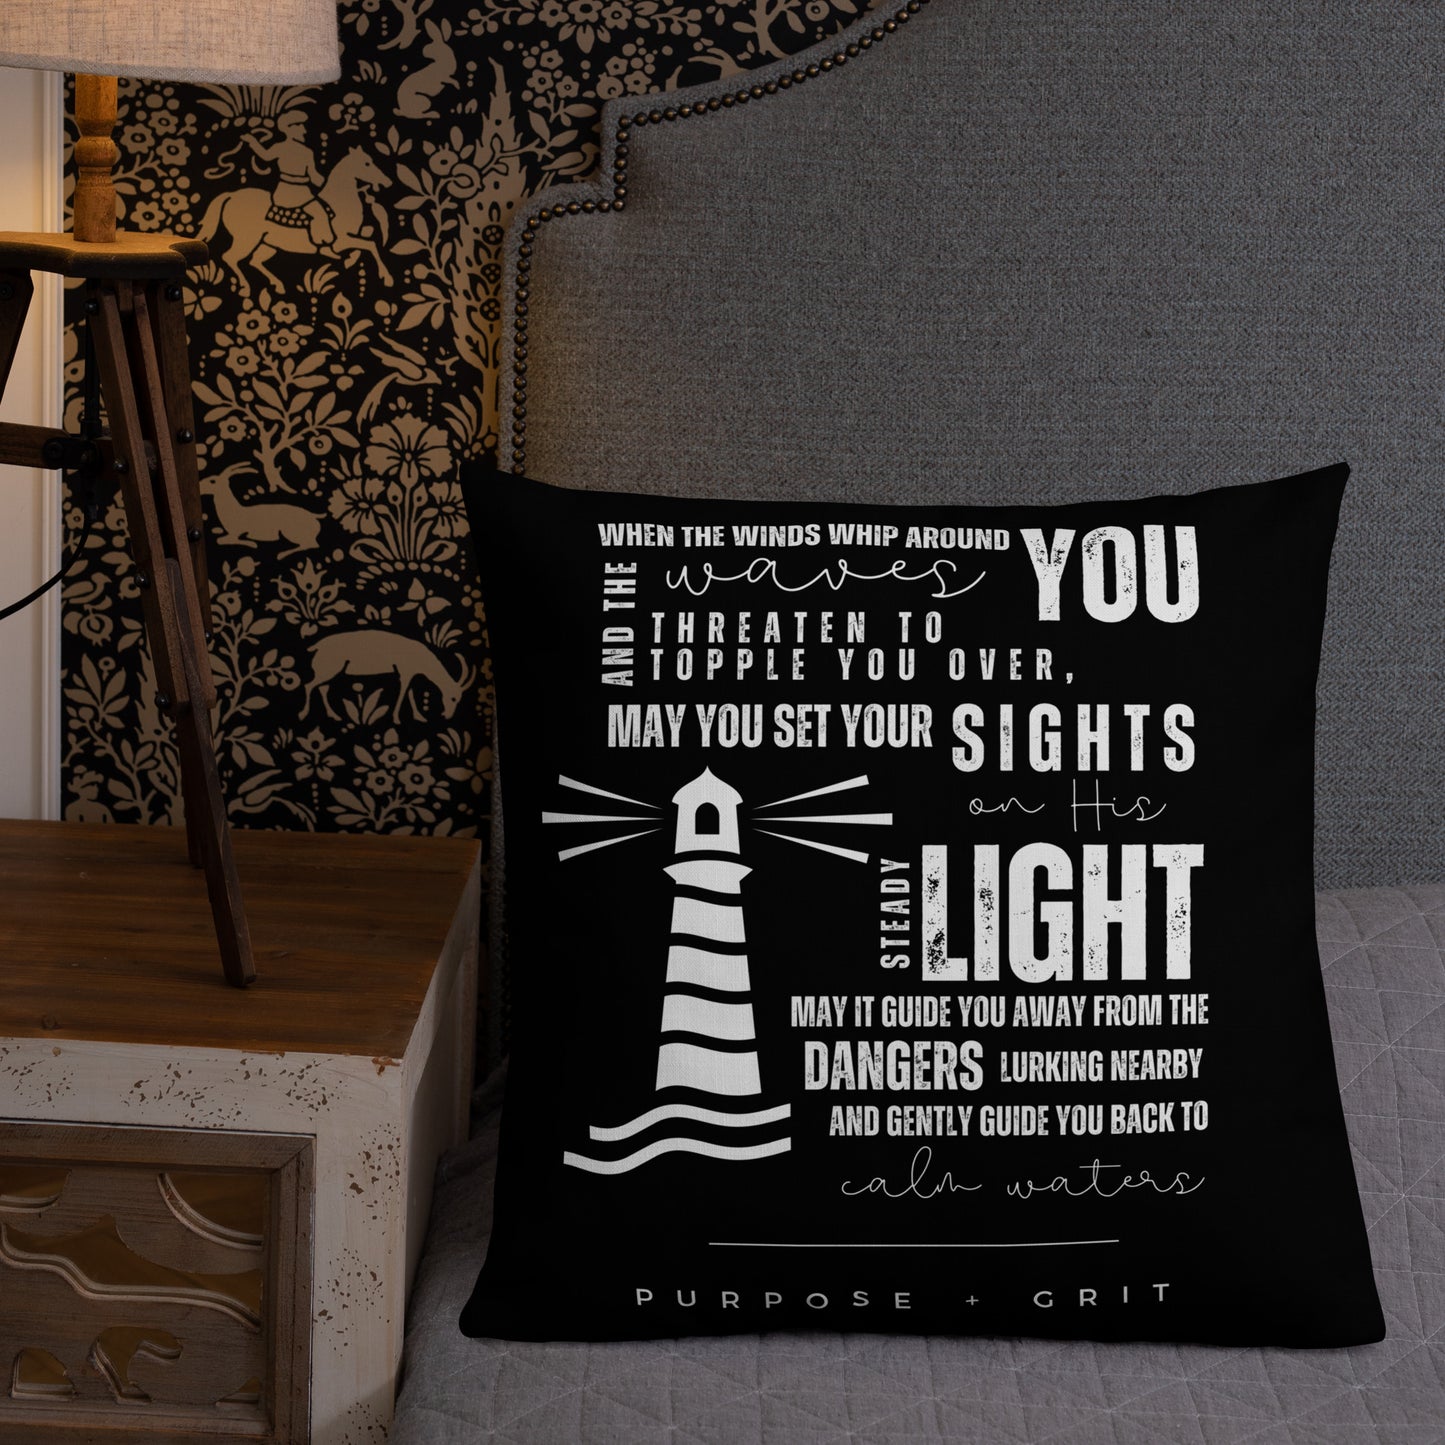 Lighthouse Throw Pillow